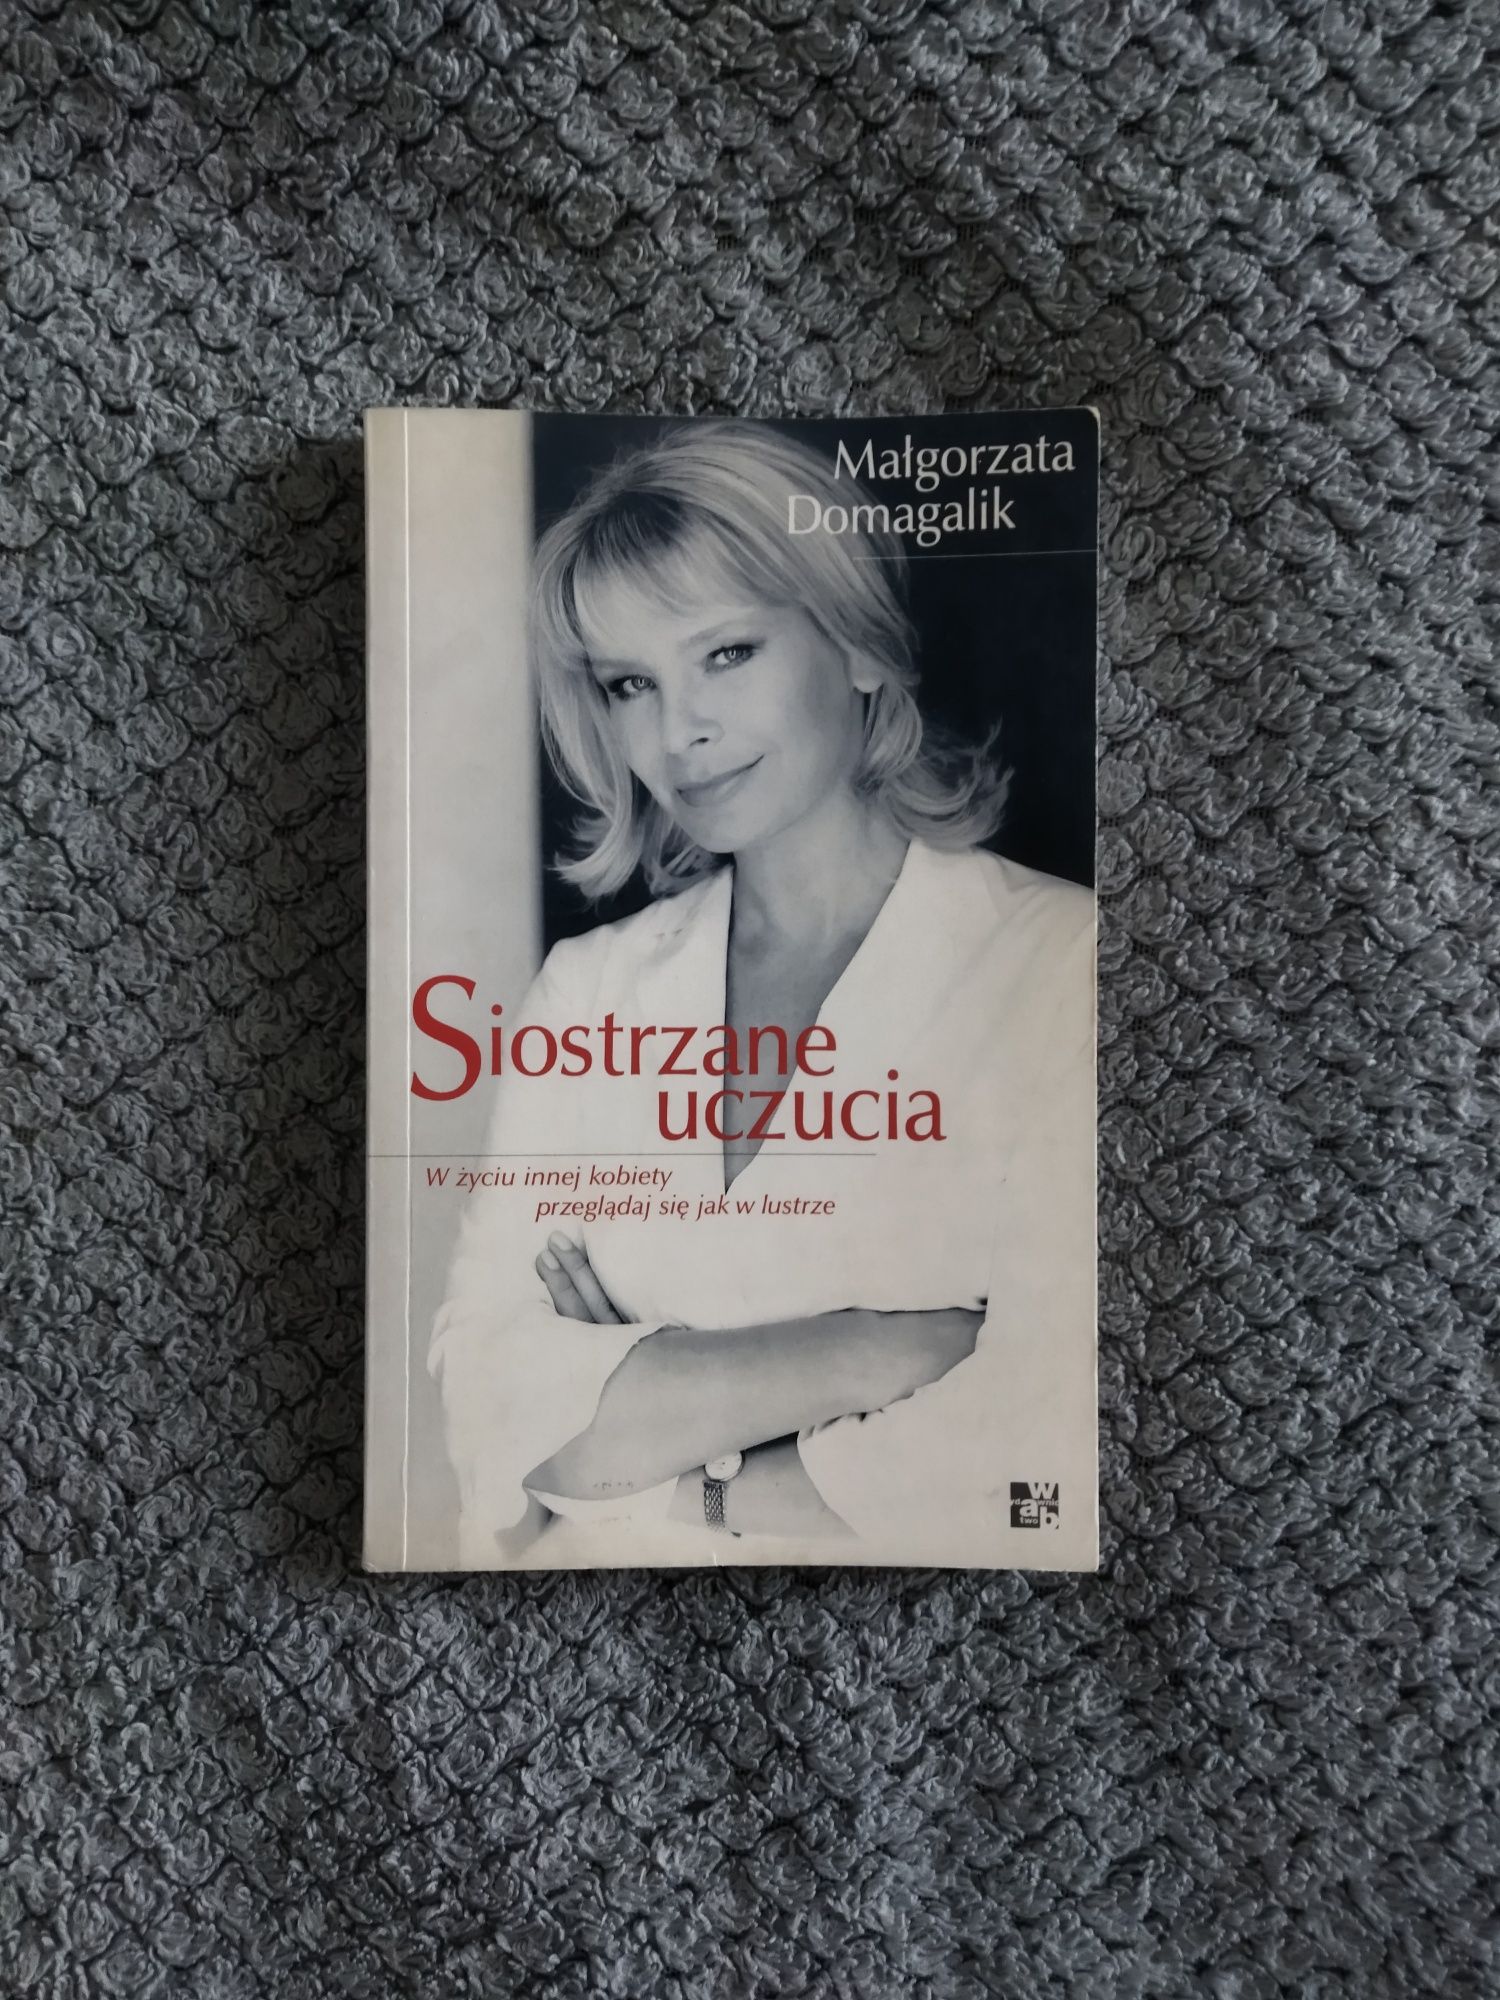 Książka " Siostrzane uczucia" Małgorzata Domagalik